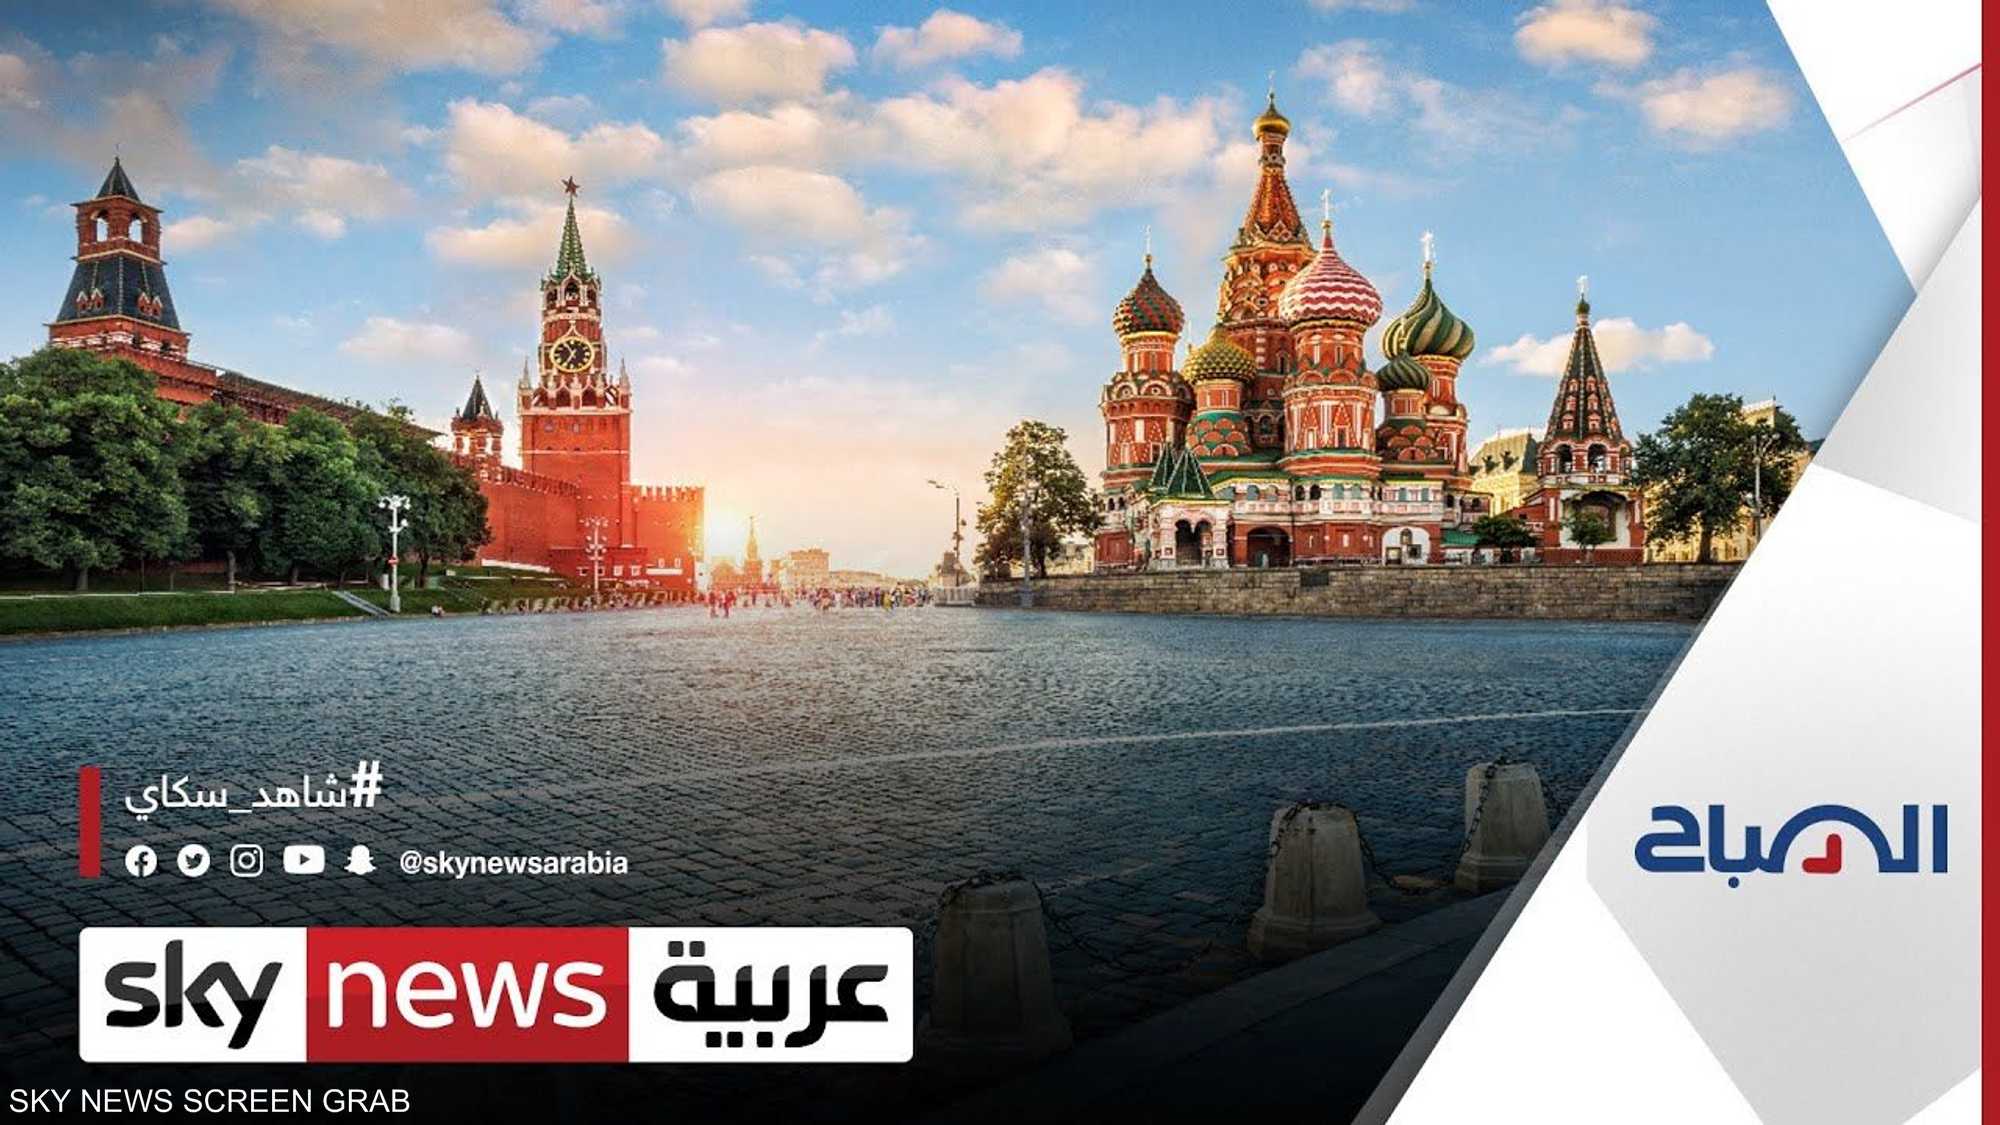 الساحة الحمراء من أشهر معالم موسكو وروسيا التاريخية